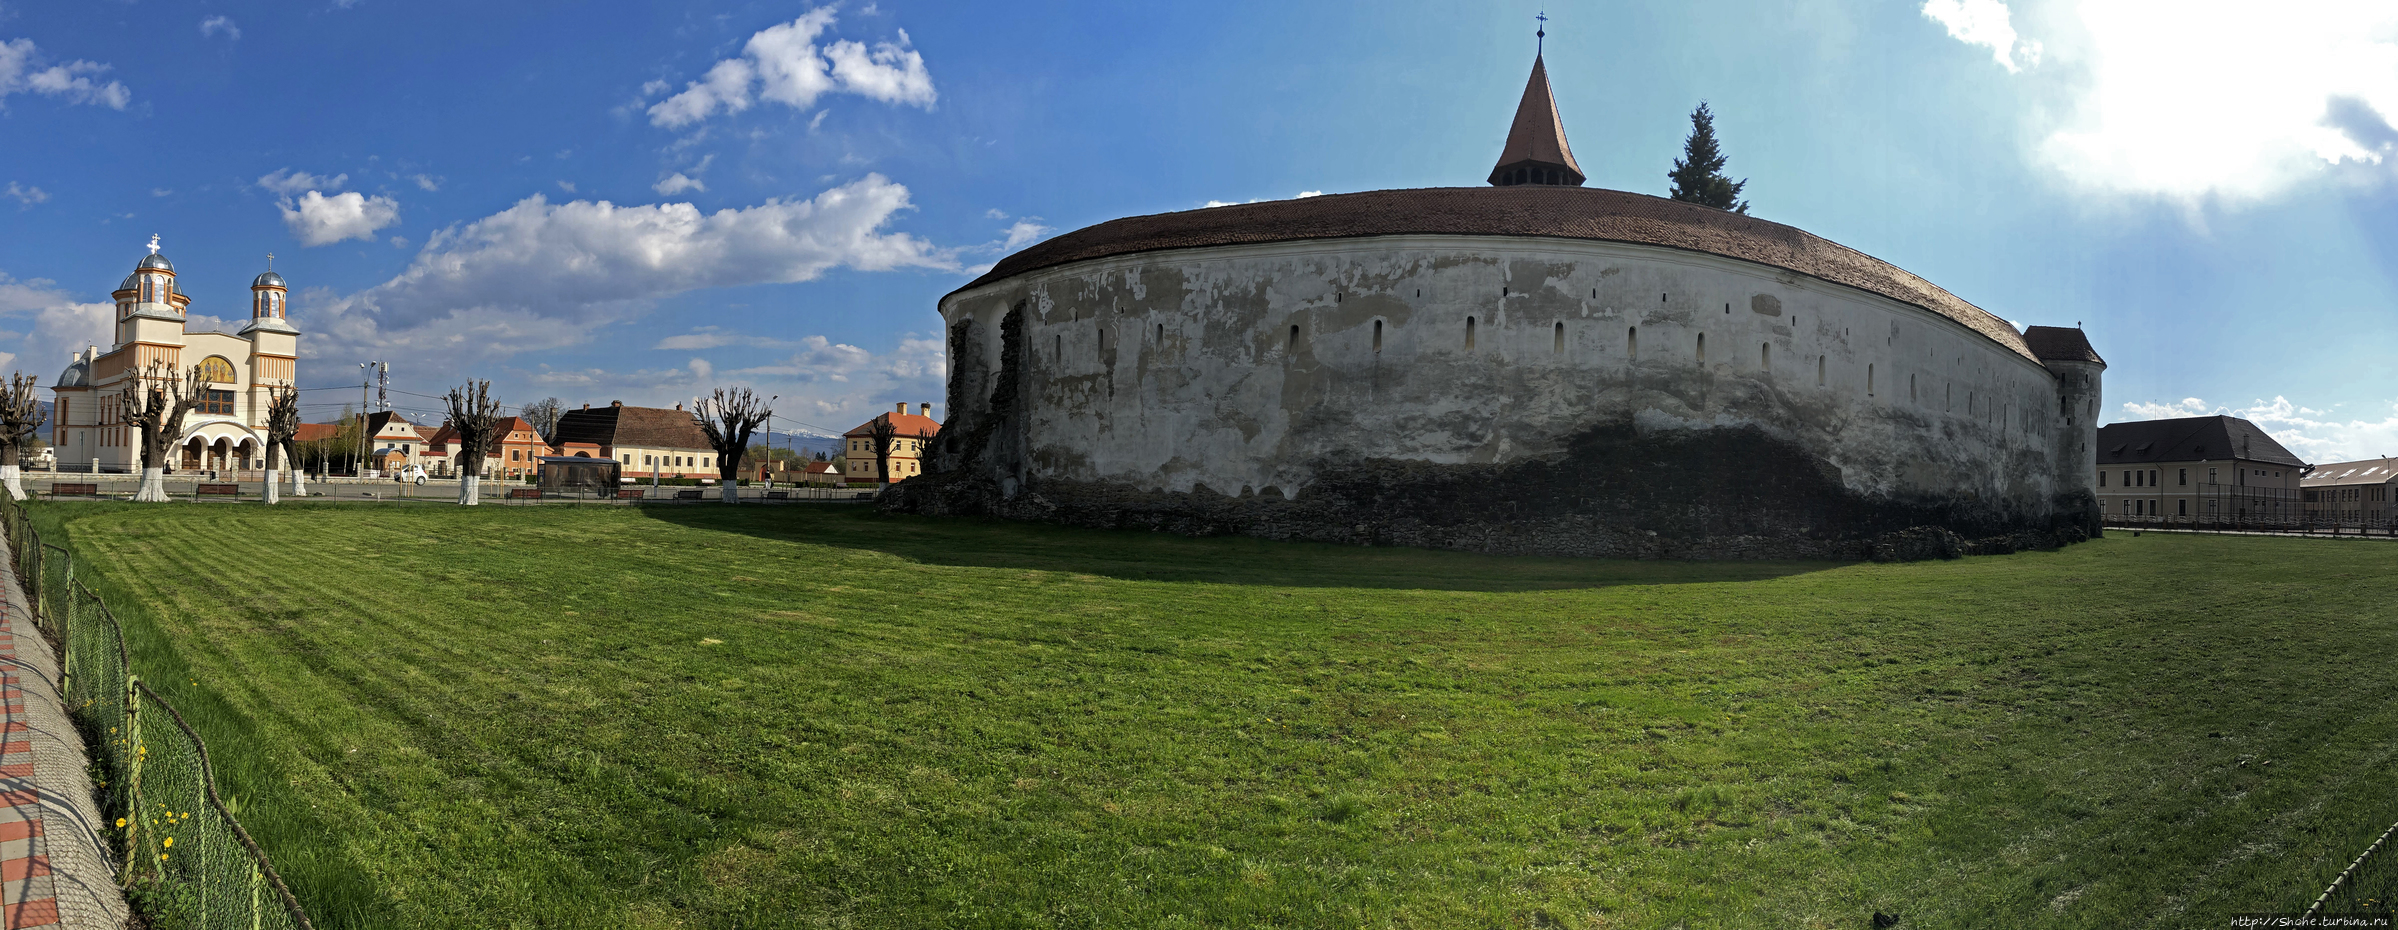 Деревня с укрепленной церковью Прежмер Прежмер, Румыния